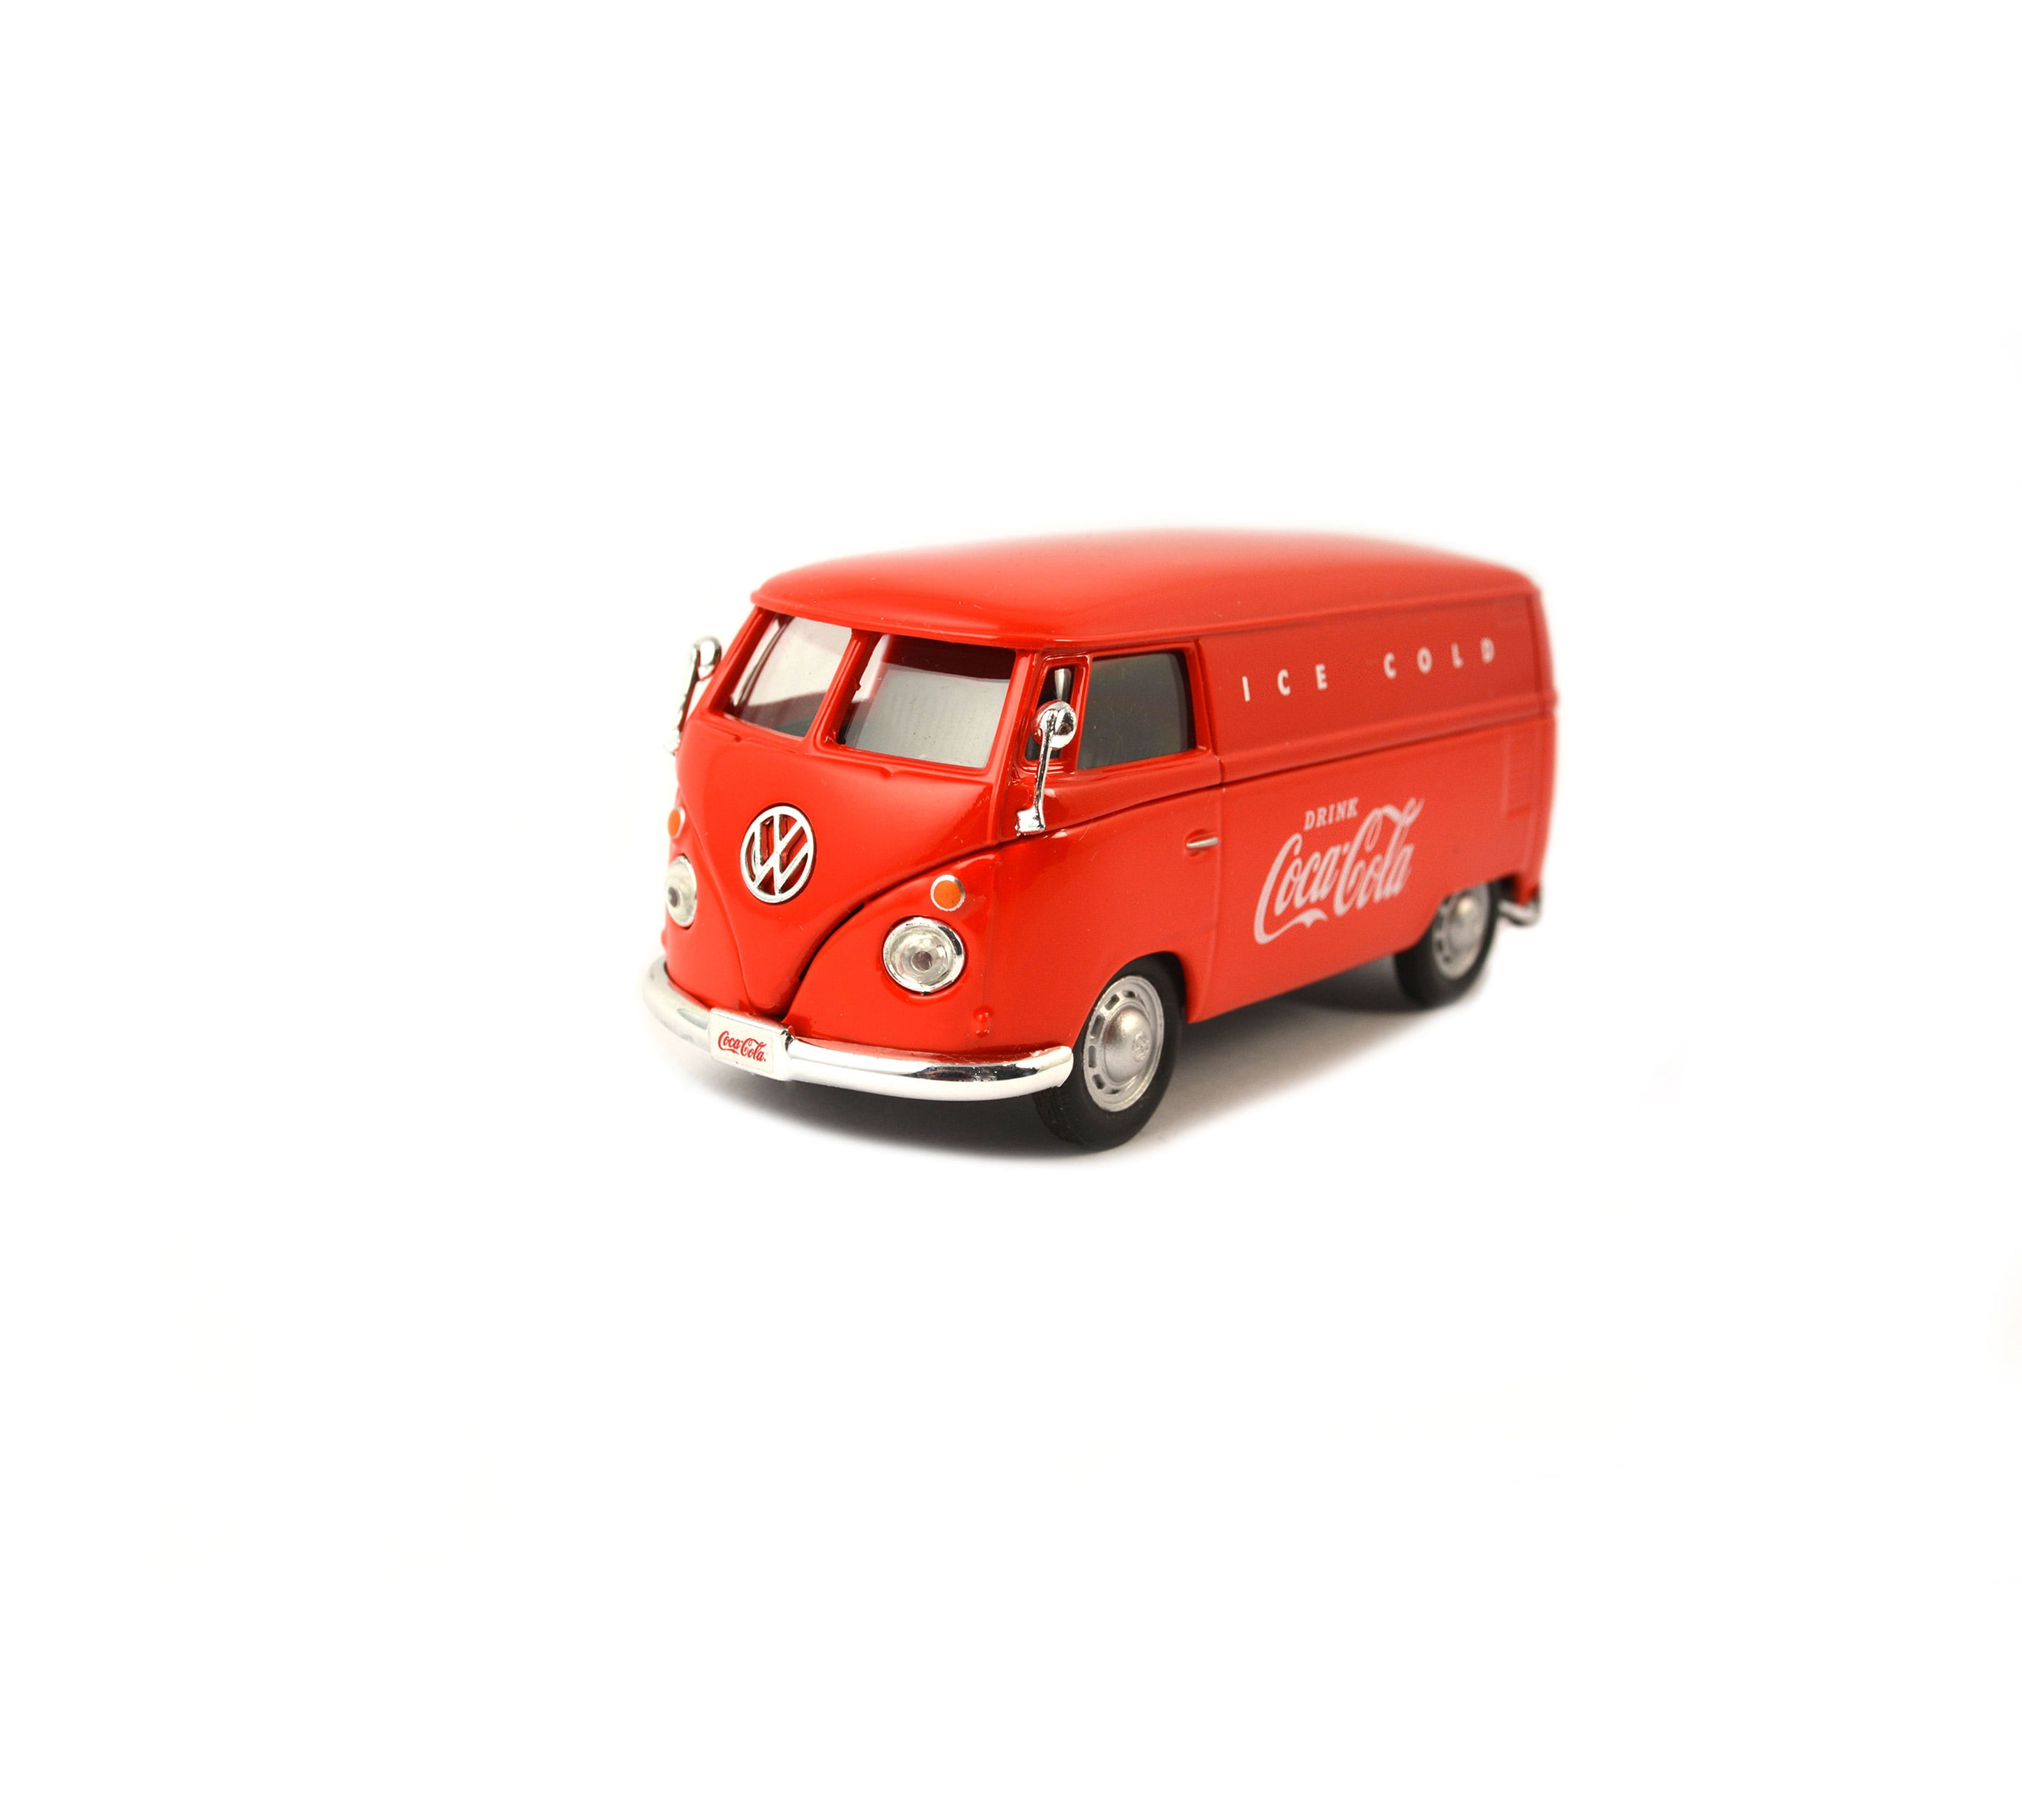 BRAND NEW Coca-Cola 1962 Volkswagen Panel Van Model 1:43 Orange and Red 